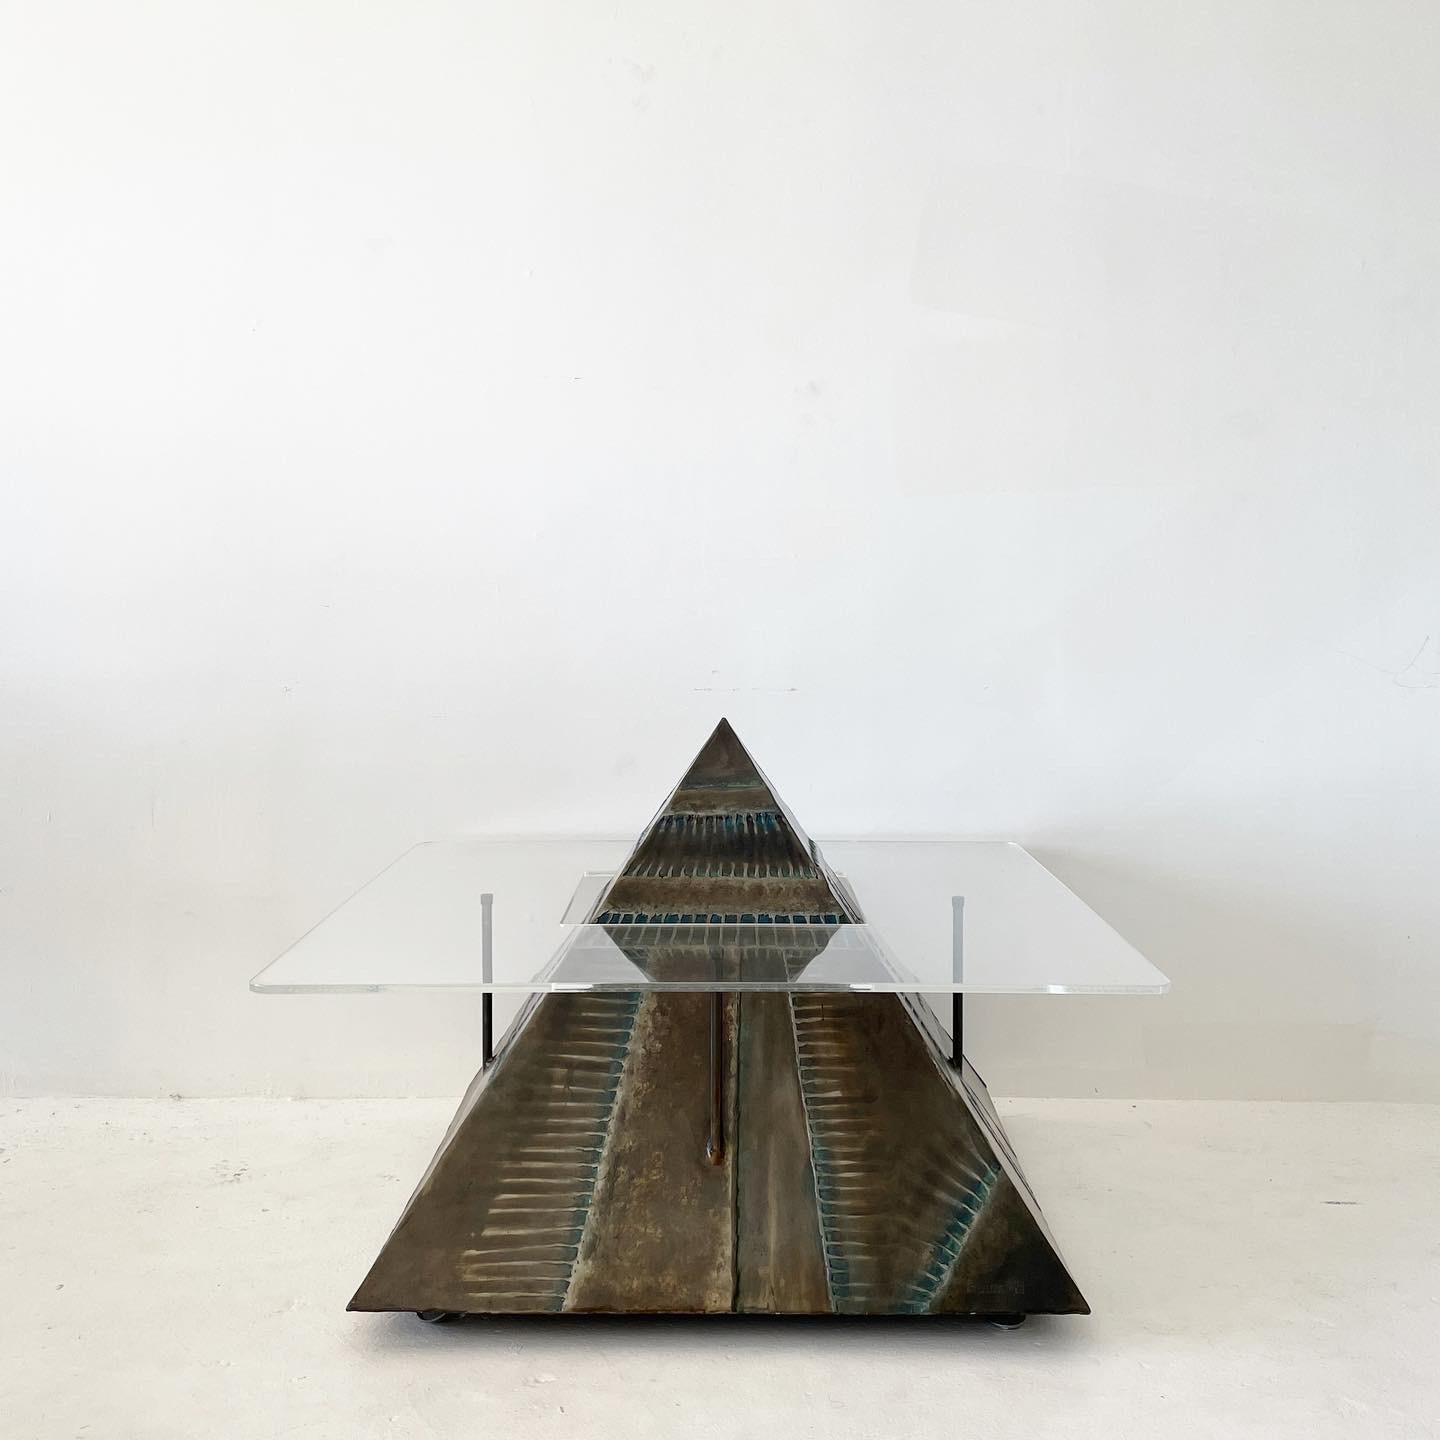 Table basse pyramidale en métal soudé, unique en son genre, fabriquée par un artiste local de Los Angeles. La surface de la sculpture est texturée et présente une finition en bronze bruni avec quelques nuances de turquoise.

Le plateau de la table